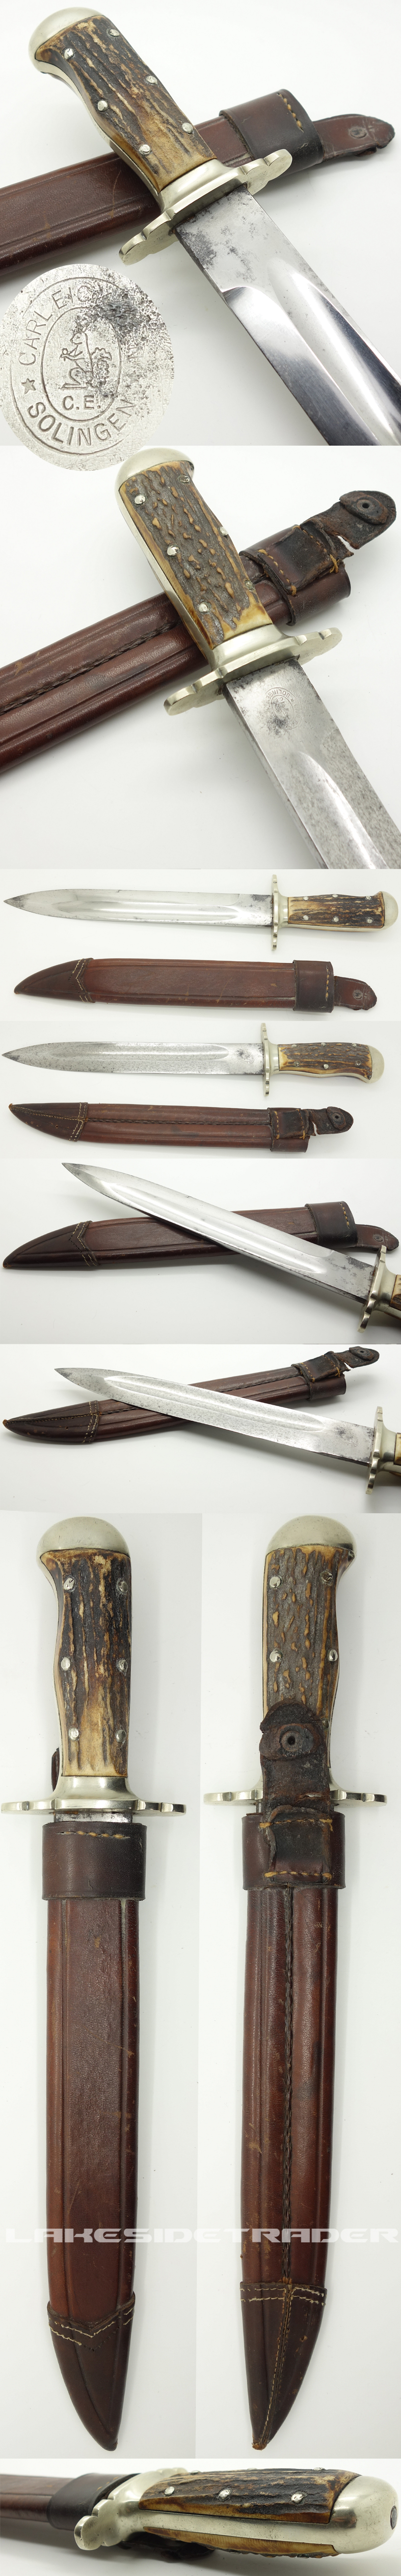 Eickhorn Hunting dagger Model 1535